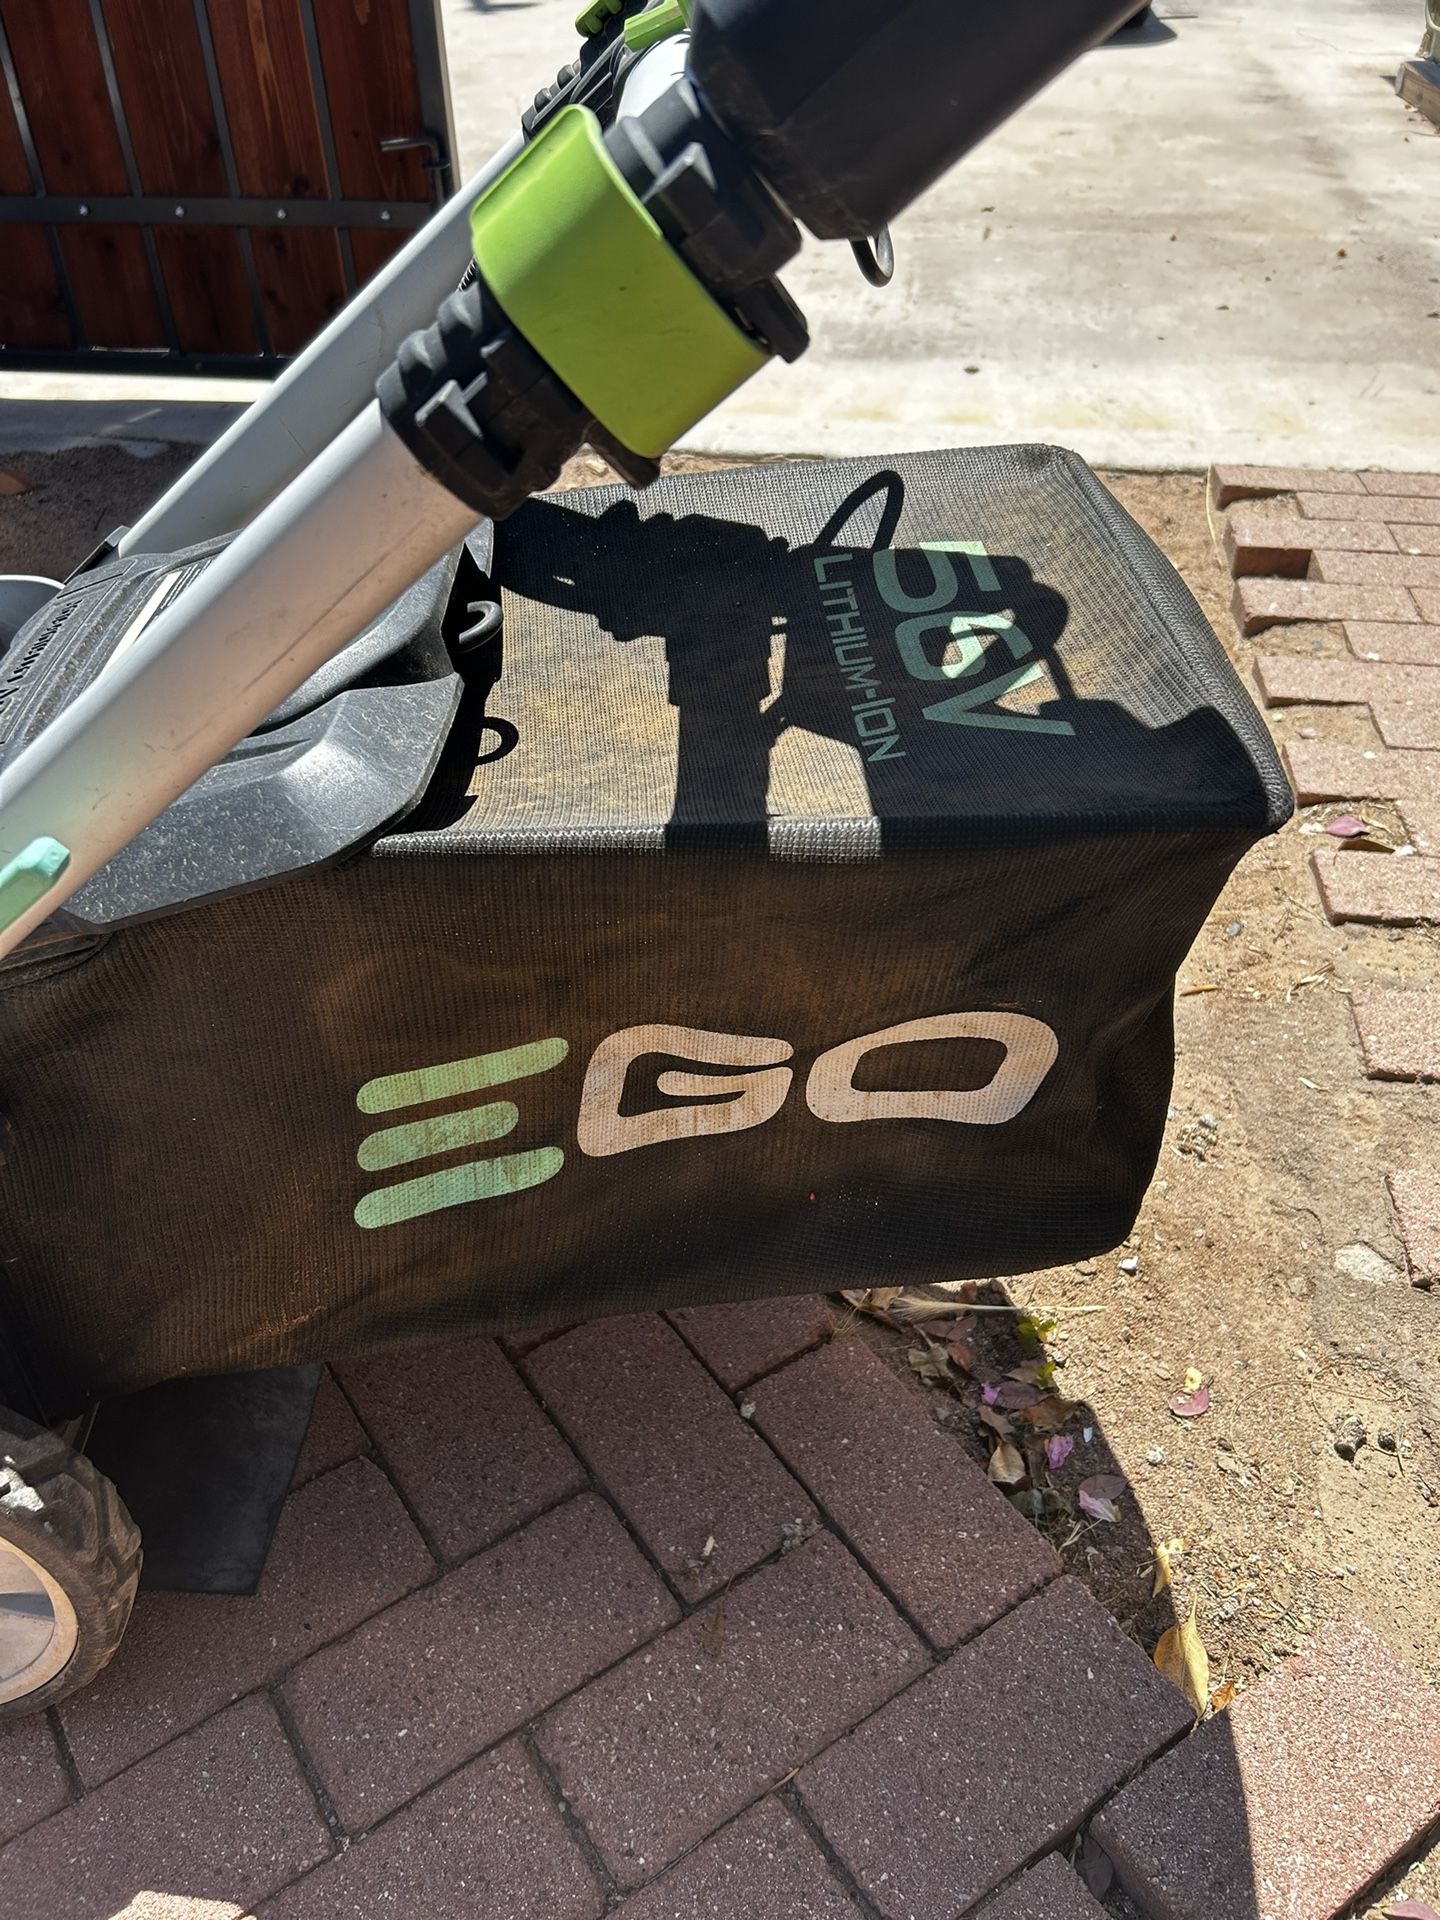 EGO Lawn Mower